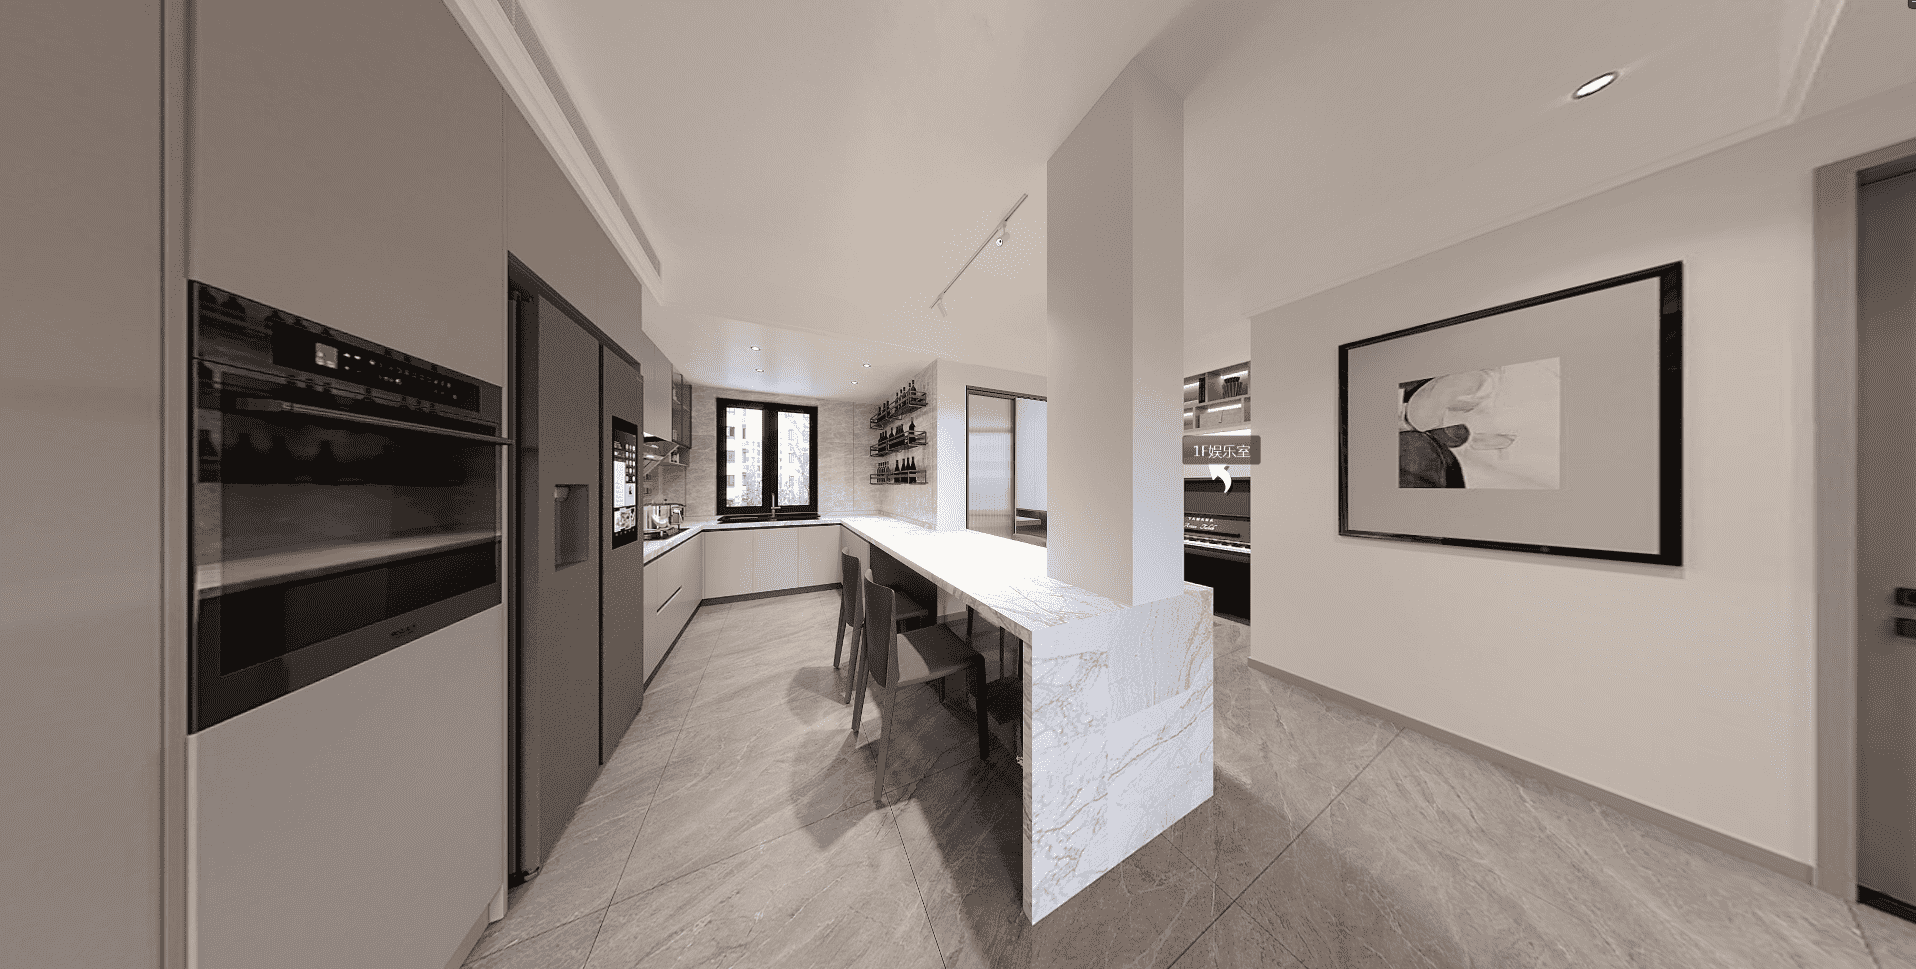 杨浦区建德国际公寓140平米平现代简约风格复式装修效果图